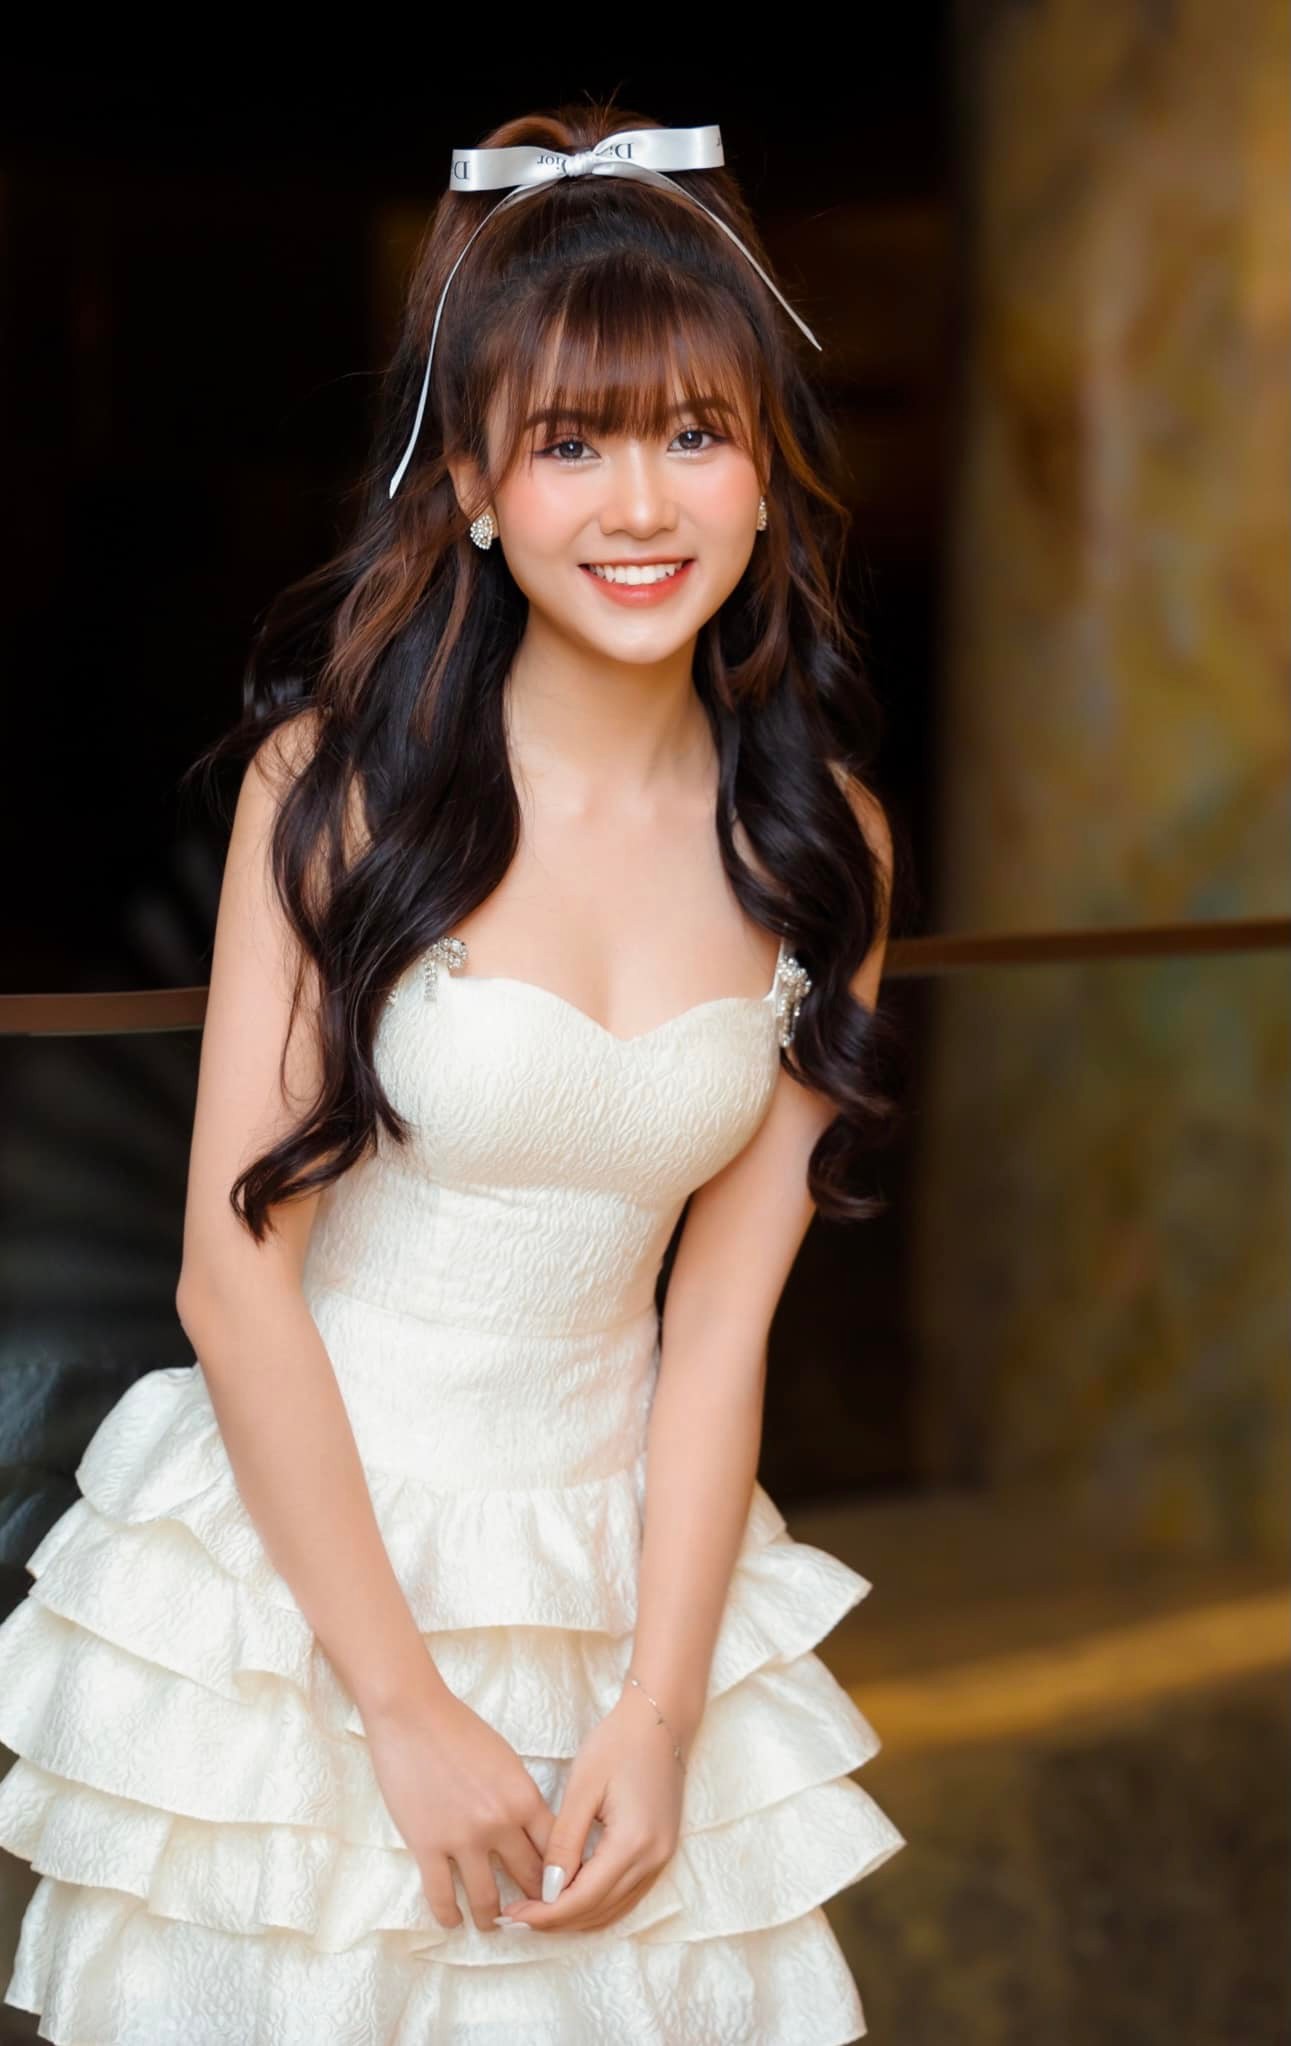 Quỳnh Trang sở hữu nhan sắc xinh đẹp, rạng ngời ở tuổi 21.